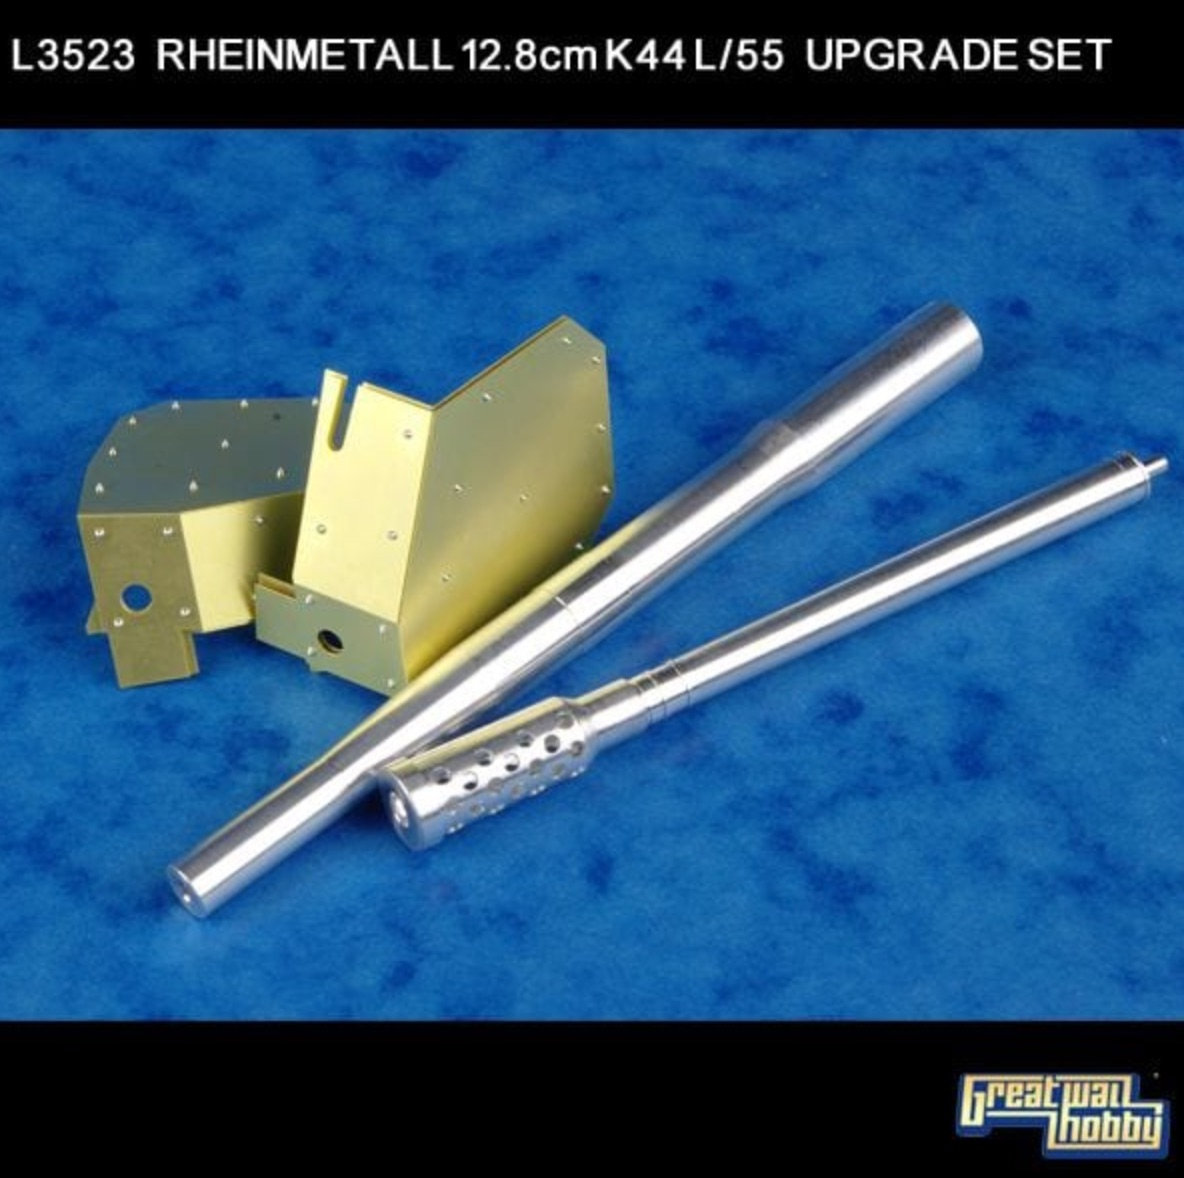 Rheinmetall 12.8cm K44 L/55 - Great Wall Hobby - 1/35 Nkv8